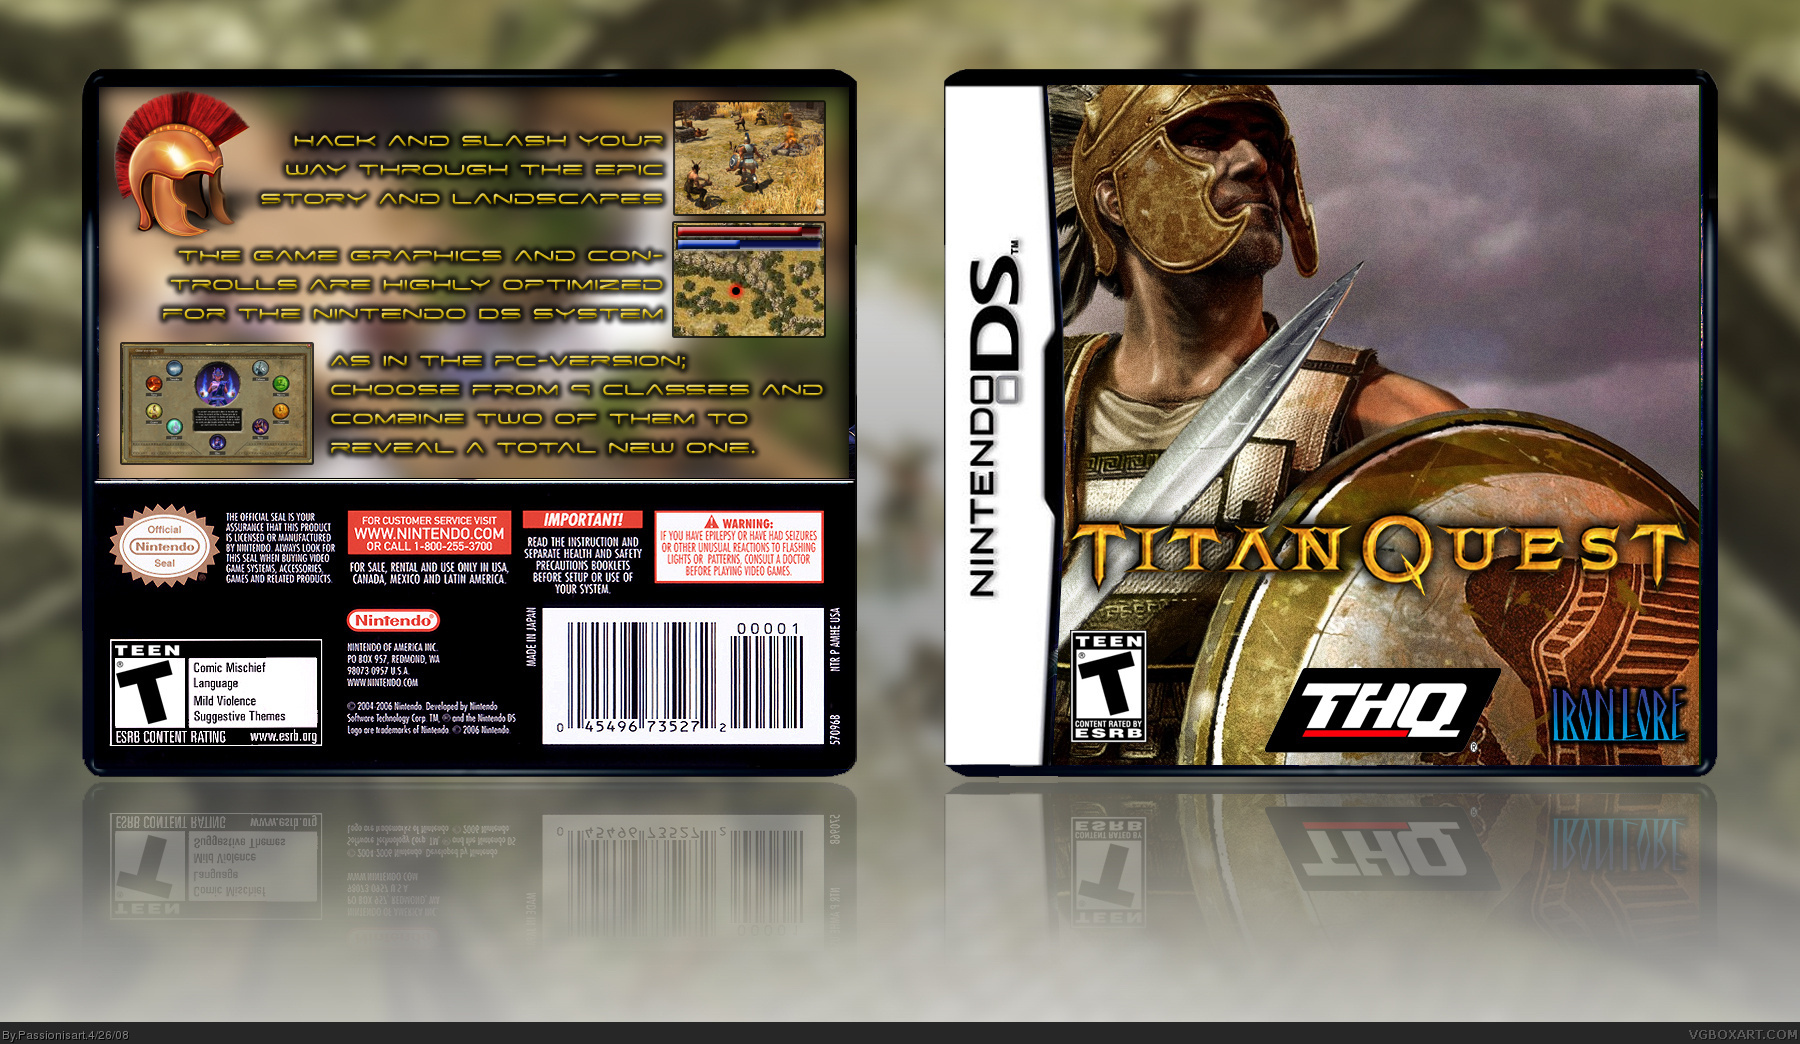 Titan Quest box cover